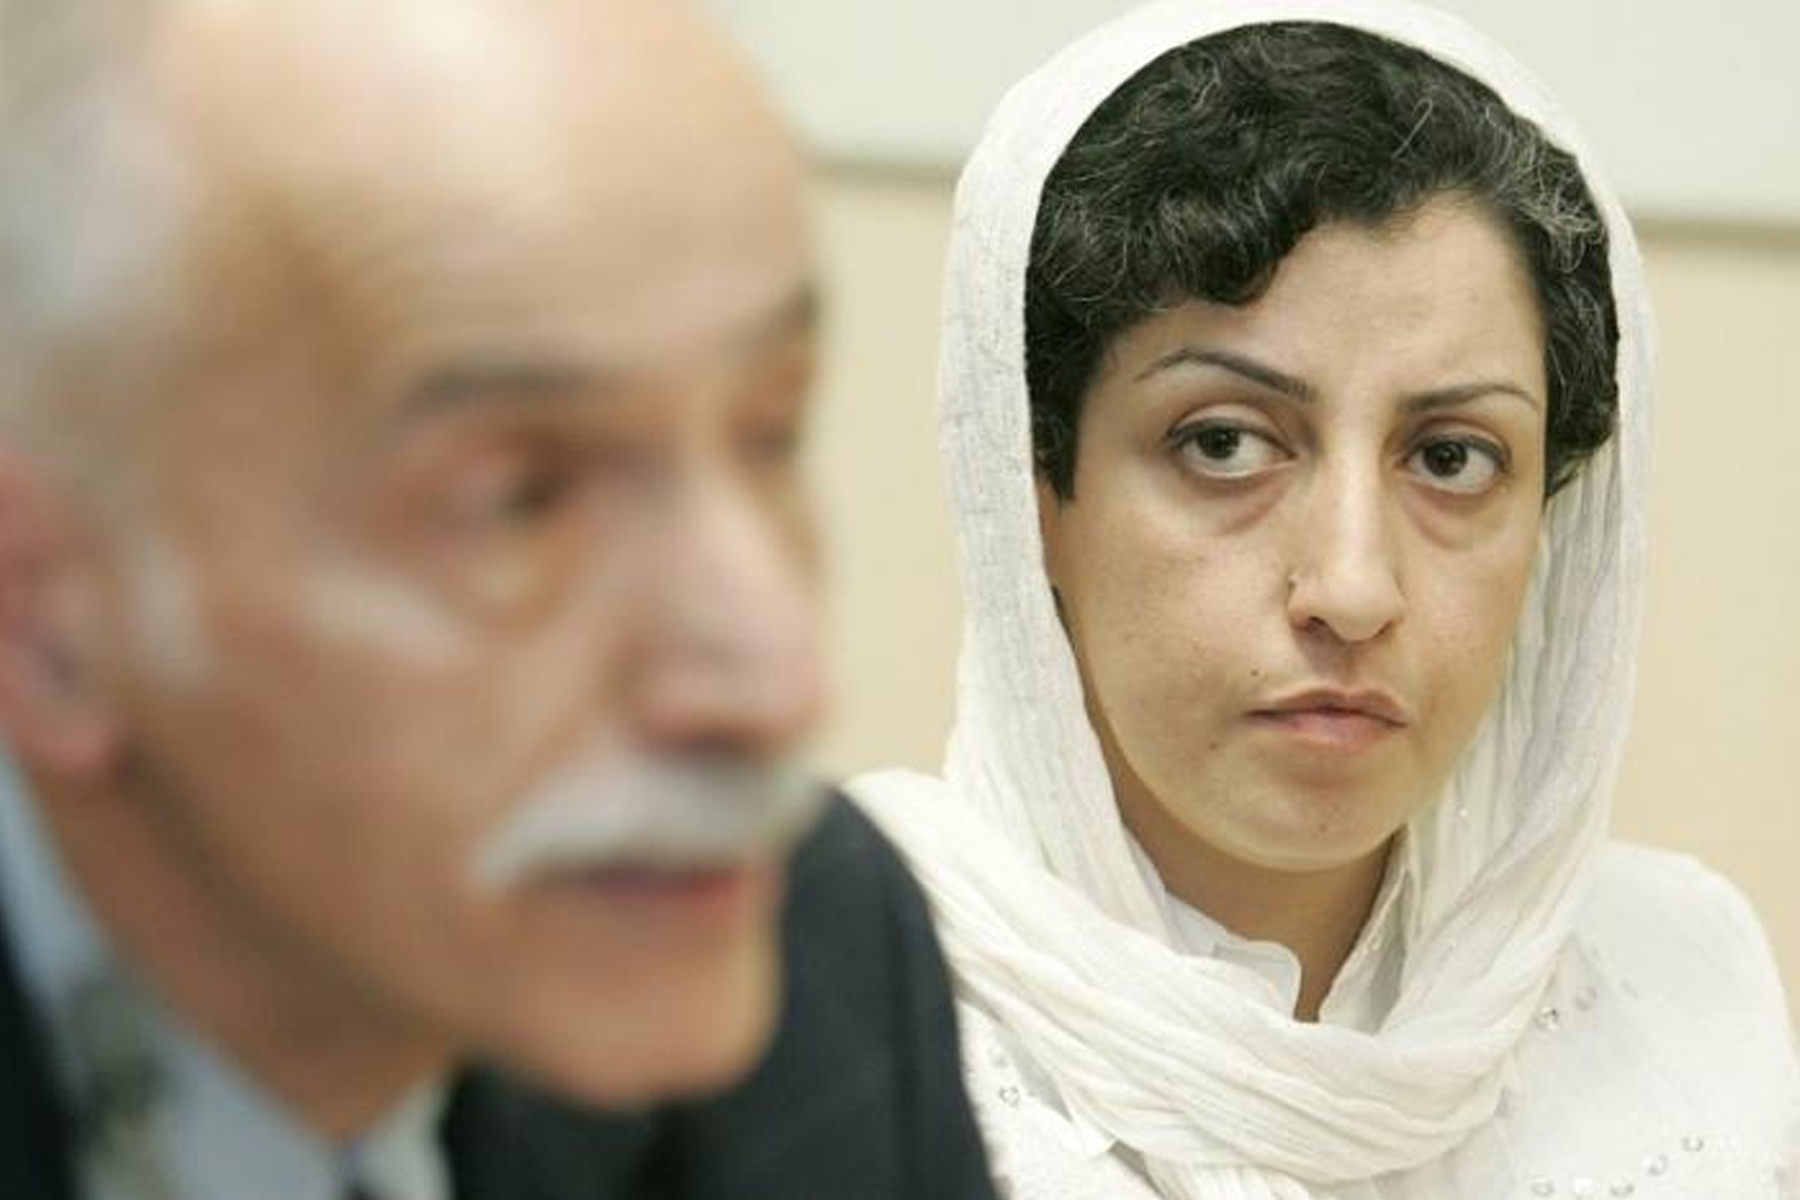 اتحادیه اروپا از ایران می خواهد که احکام جدید نرگس محمدی فعال حقوق بشر را بررسی کند